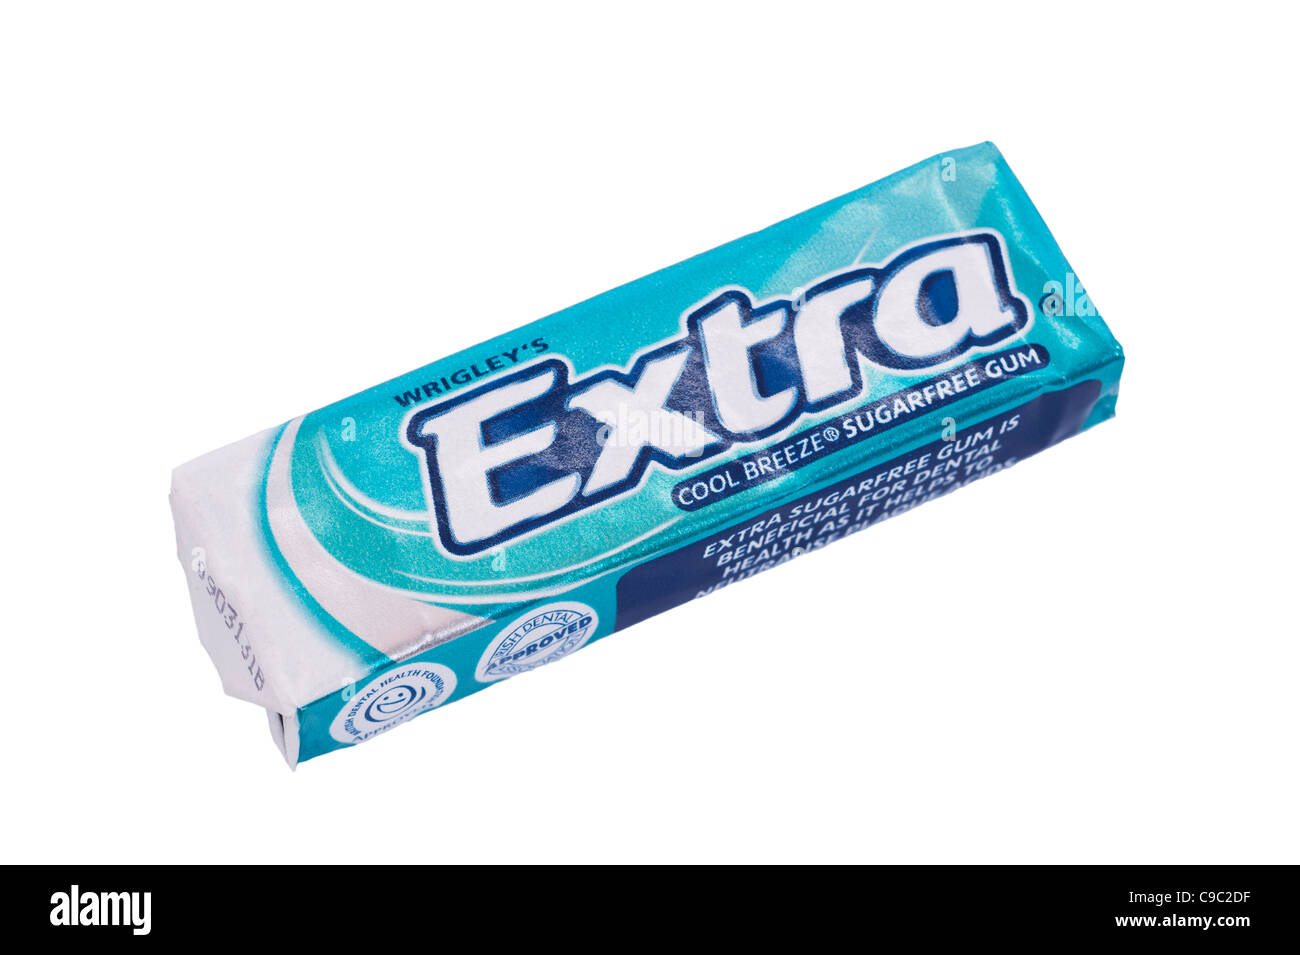 Un paquete de Wrigley's Extra sugarfree brisa fresca de masticar chicle sobre un fondo blanco. Foto de stock